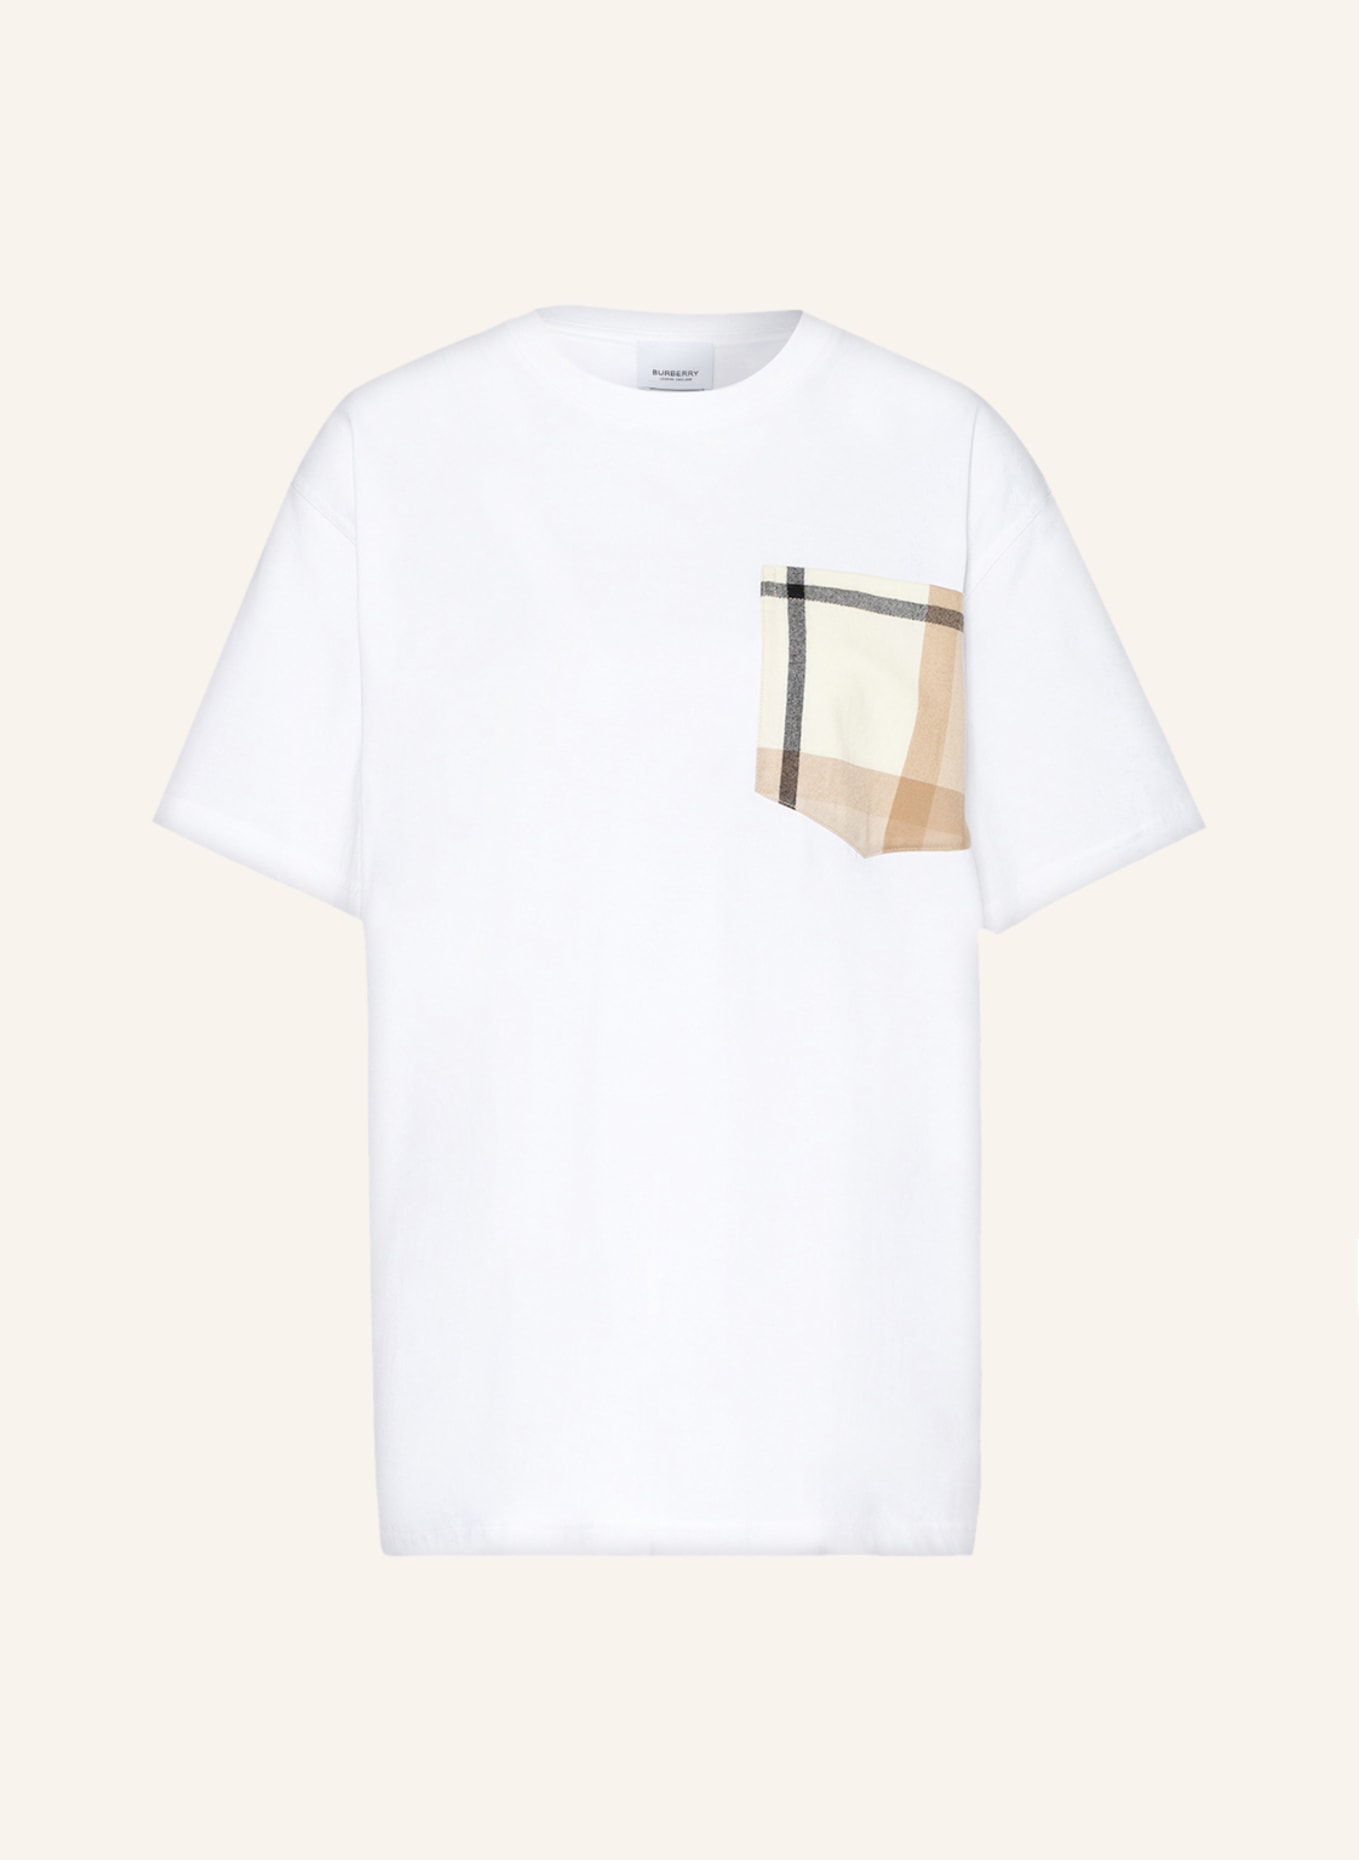 BURBERRY T-Shirt CARRICK, Farbe: WEISS (Bild 1)